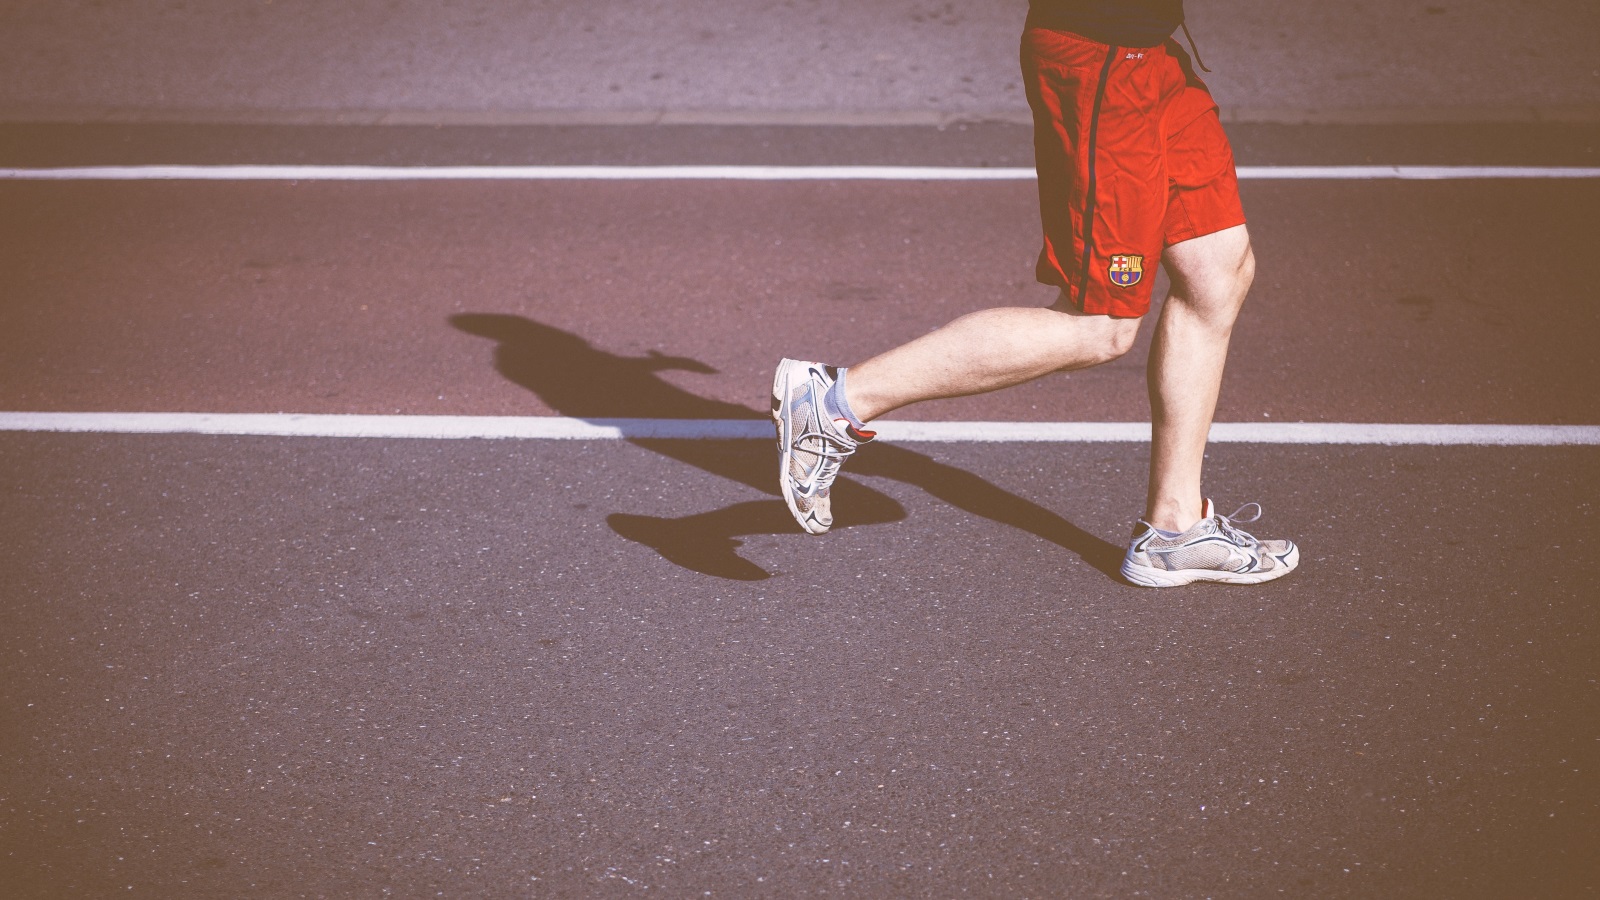 ليكون الركض سهلاً ومرناً ولا يُشعر جسدك بالكثير من الألم والضغط على الأقدام، والركب والمفاصل، عليك ارتداء حذاء مخصص للركض